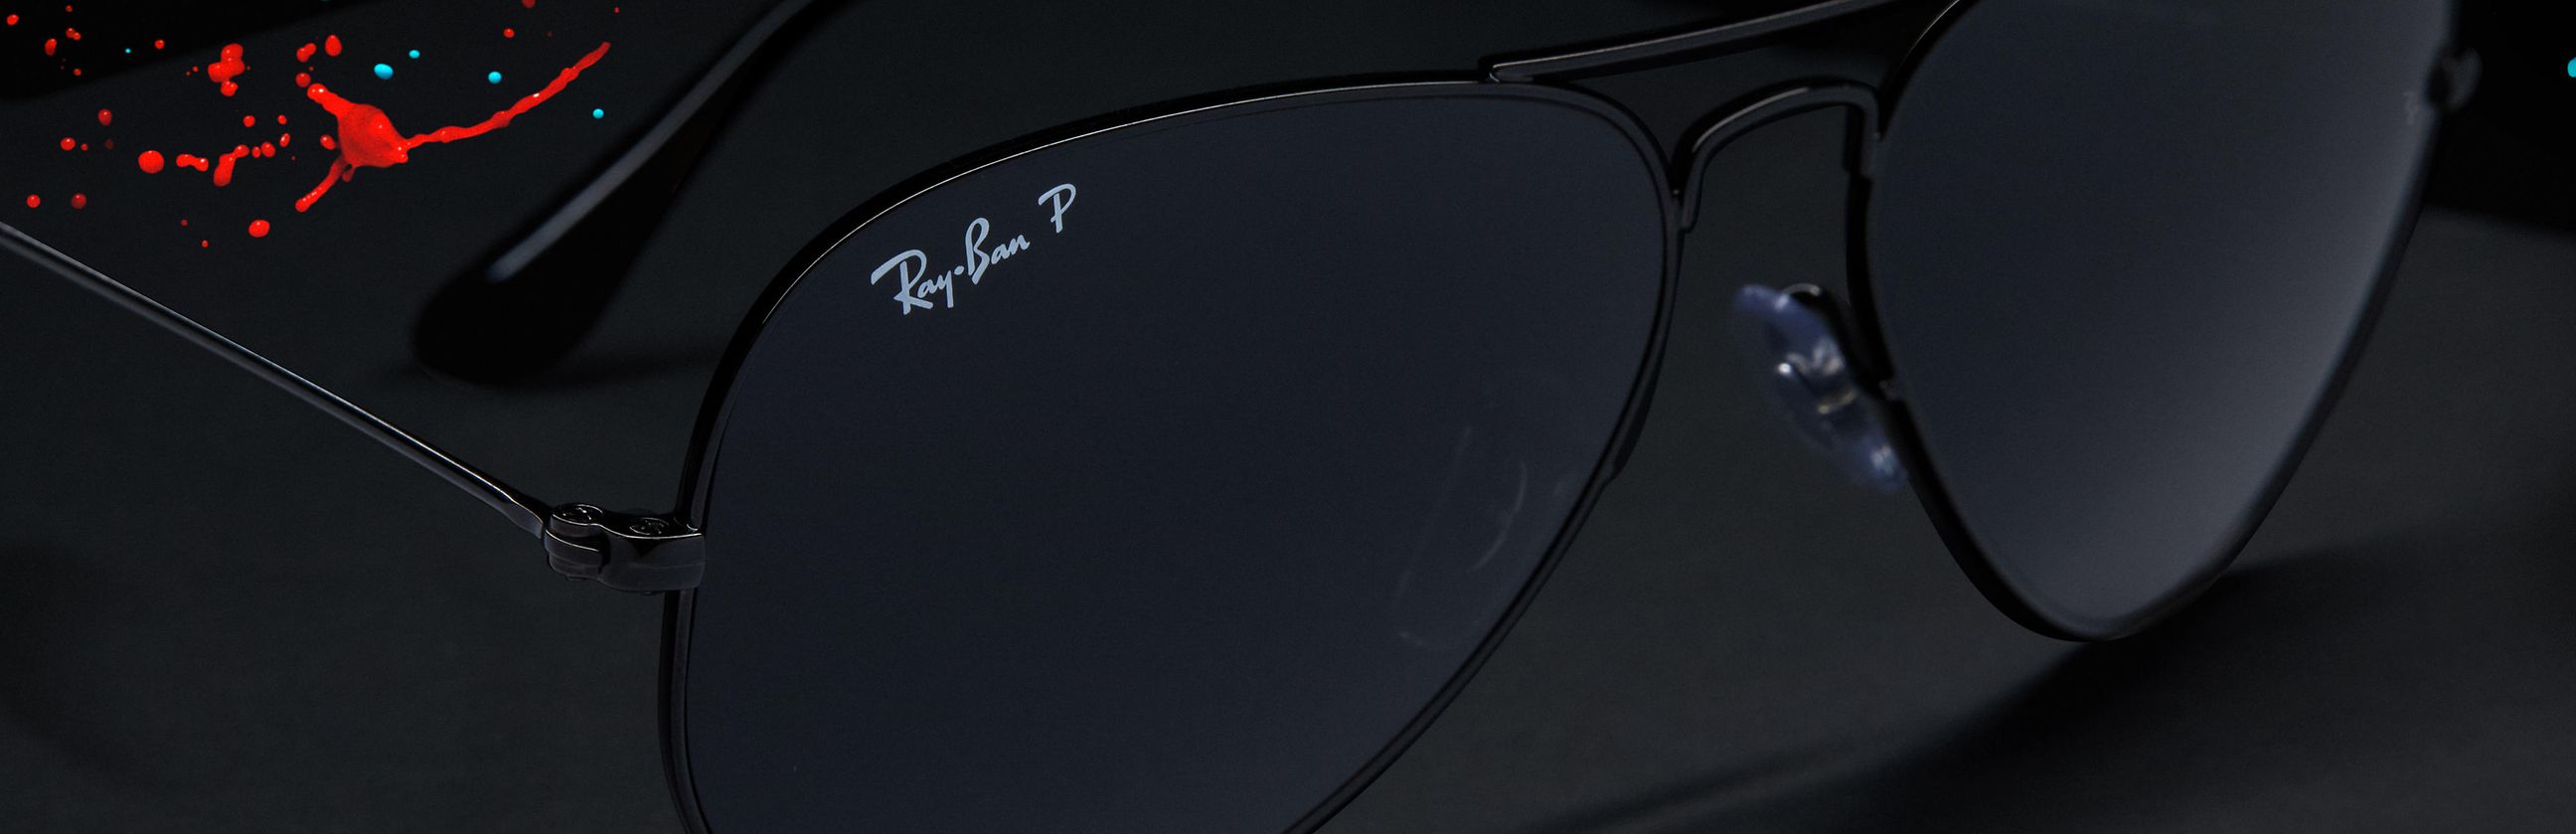 Abandonar marrón Lima Gafas de sol polarizadas con lentes negras | Ray-Ban®